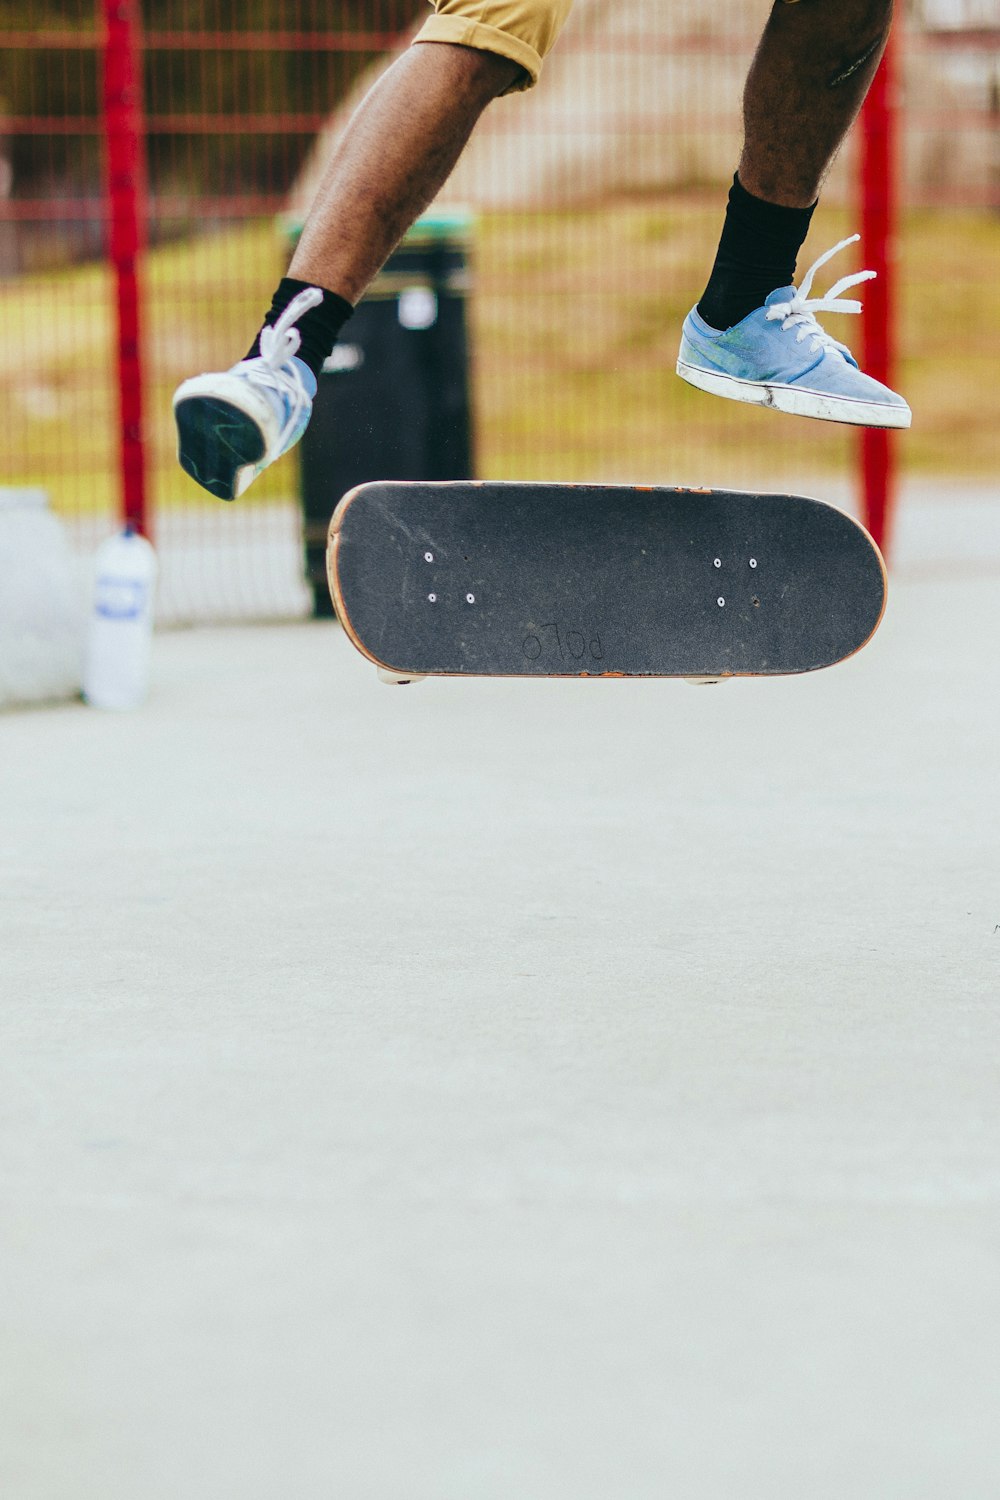 man playing skateboard while performing flip tricks